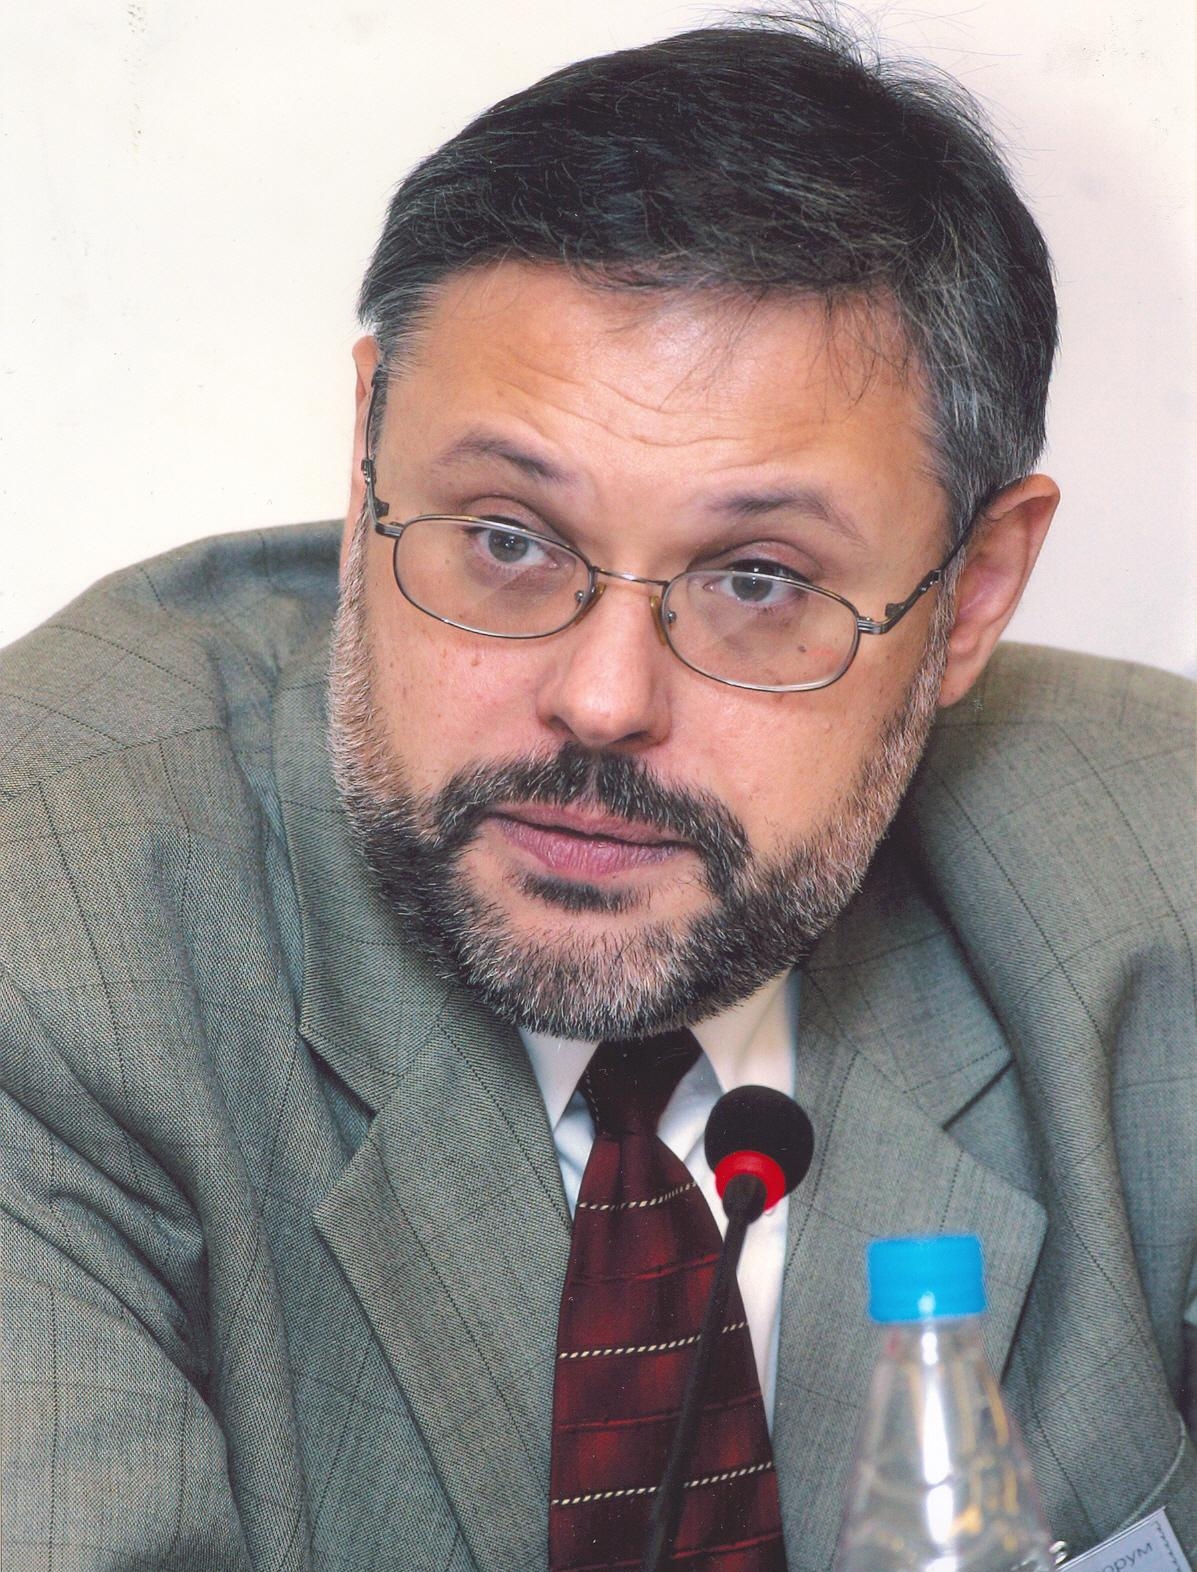 Михаил Леонидович Хазин (1962) - российский экономист, публицист, теле- и радиоведущий